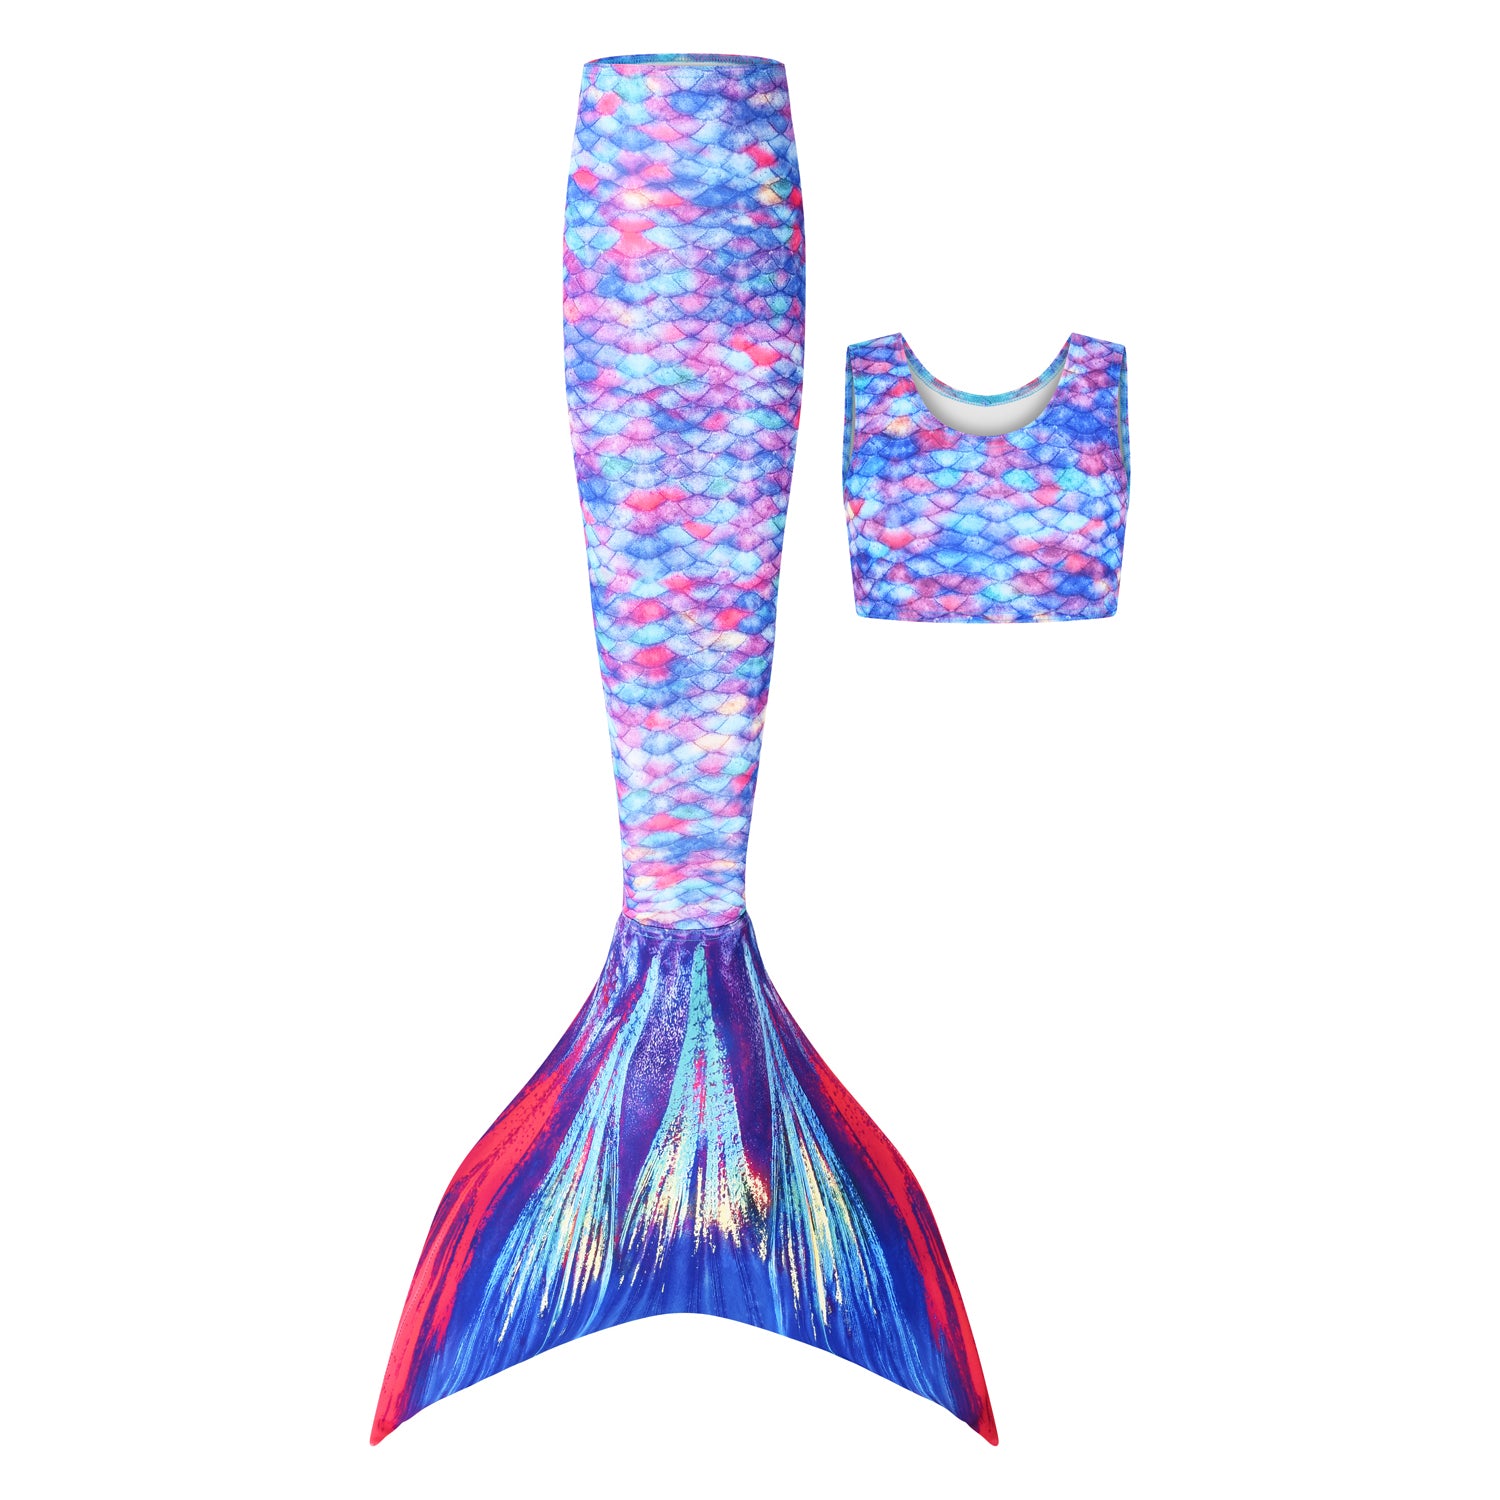 Starbright Princess Mermaid Tail Upgrade Kit